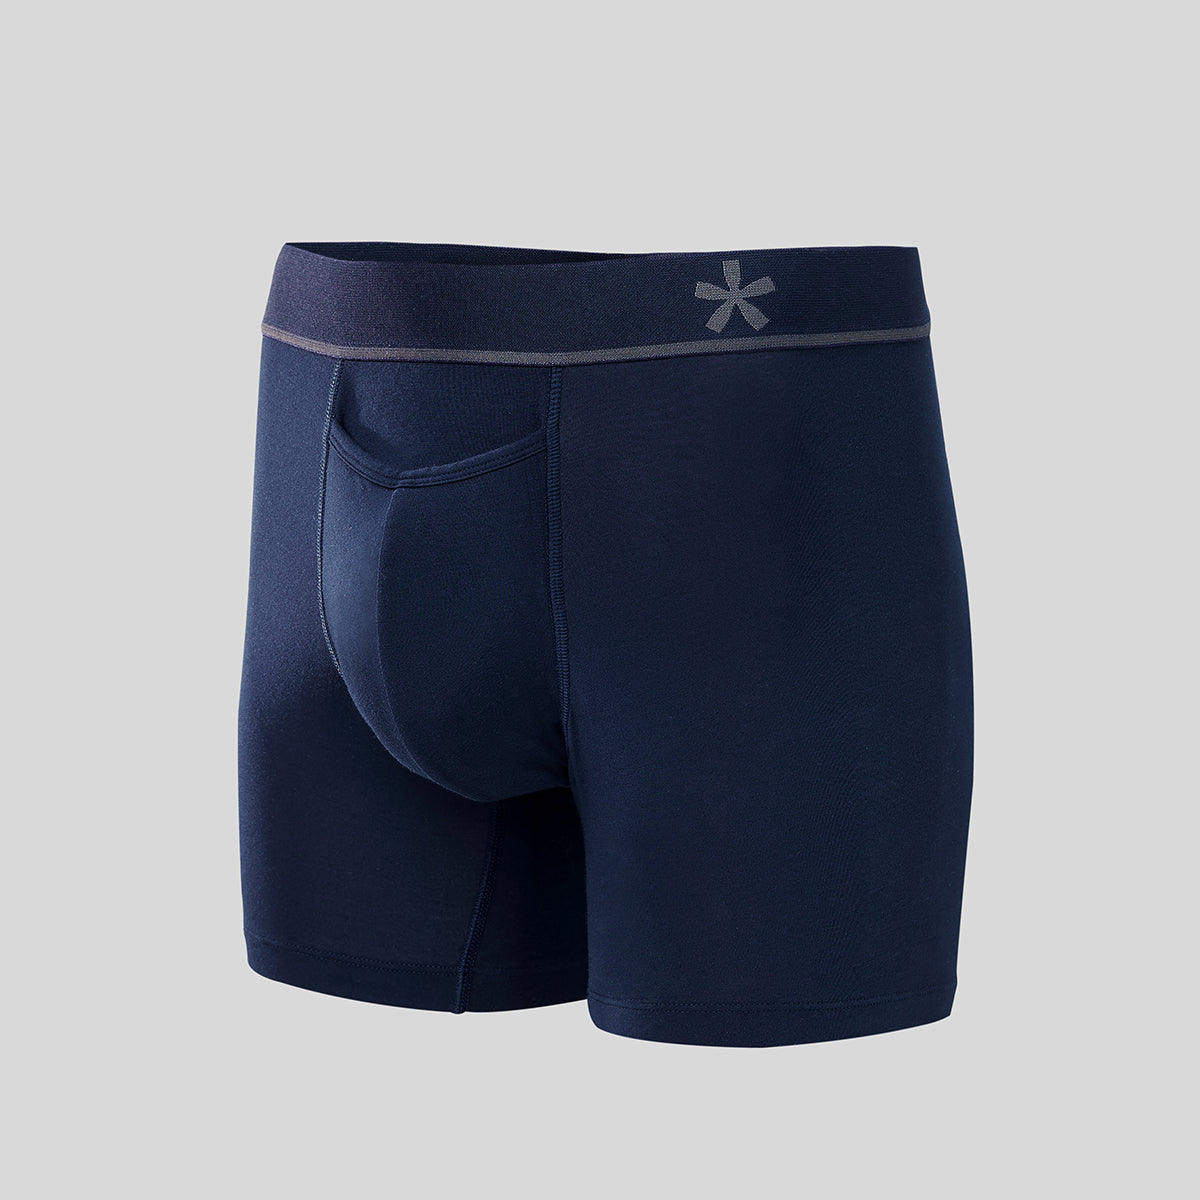 Men's Basic All-cotton Boxers Blue 44